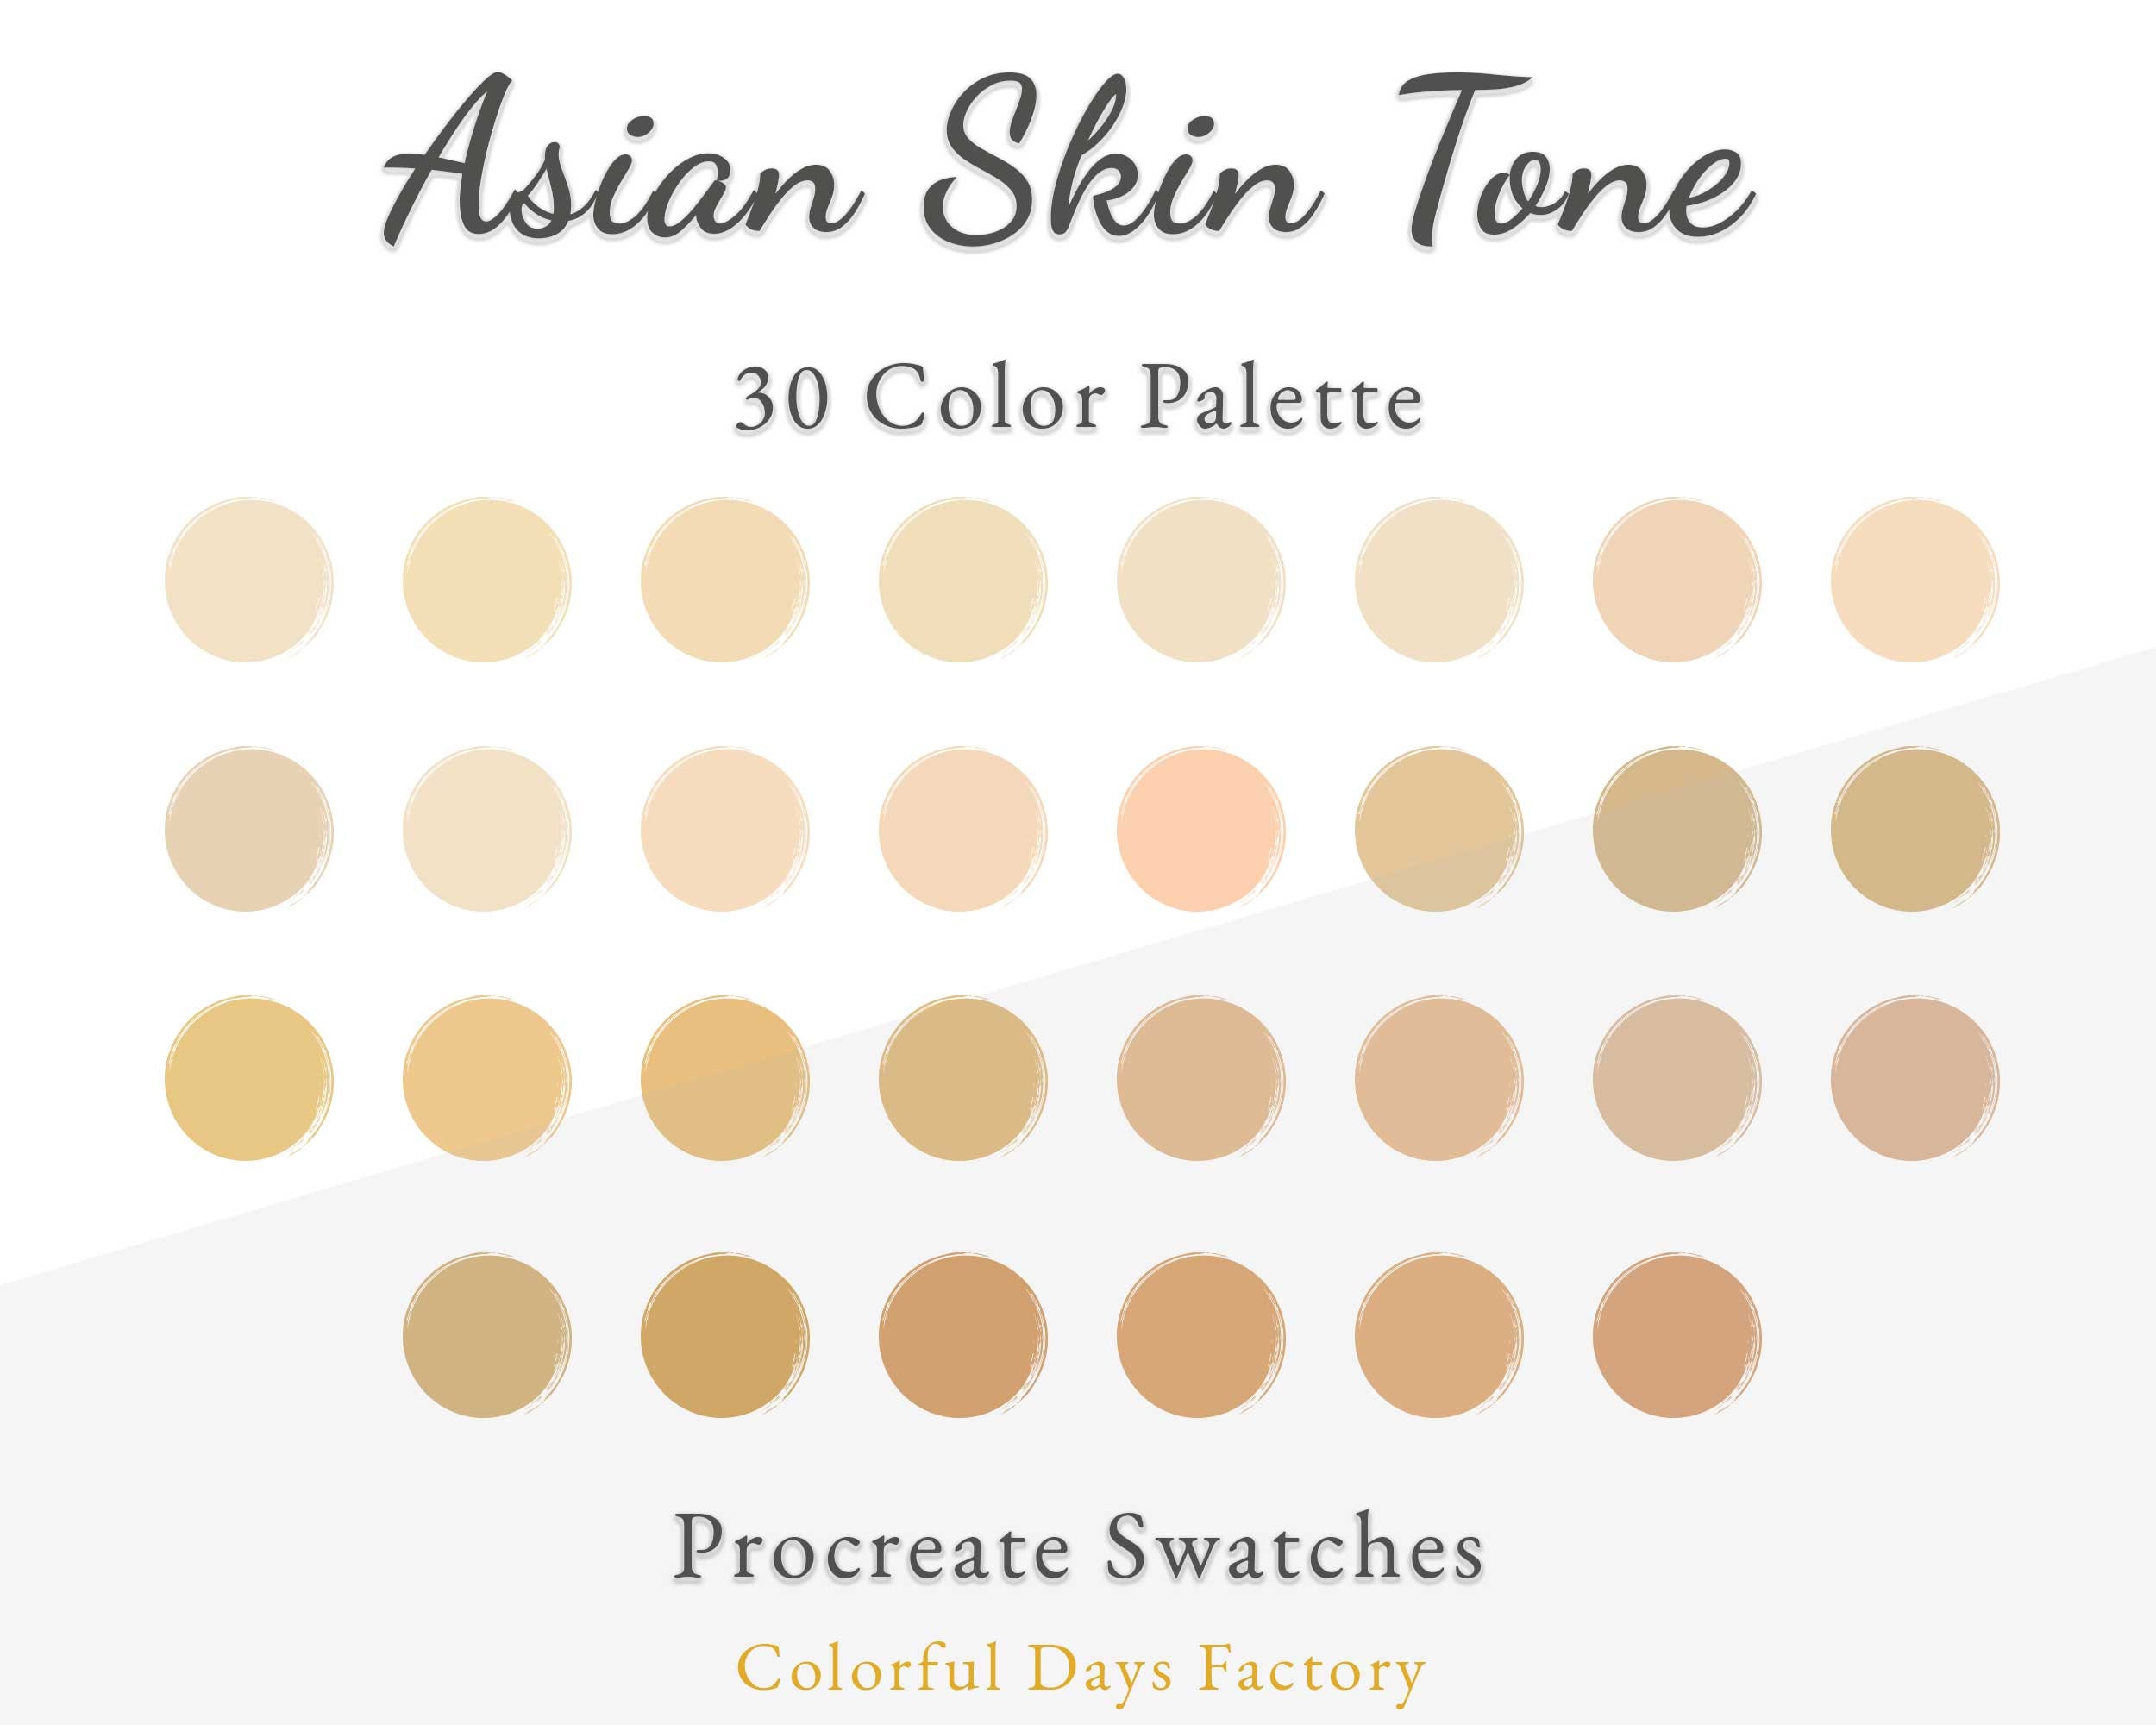 2. Top Nail Polish Shades for Asian Skin - wide 5